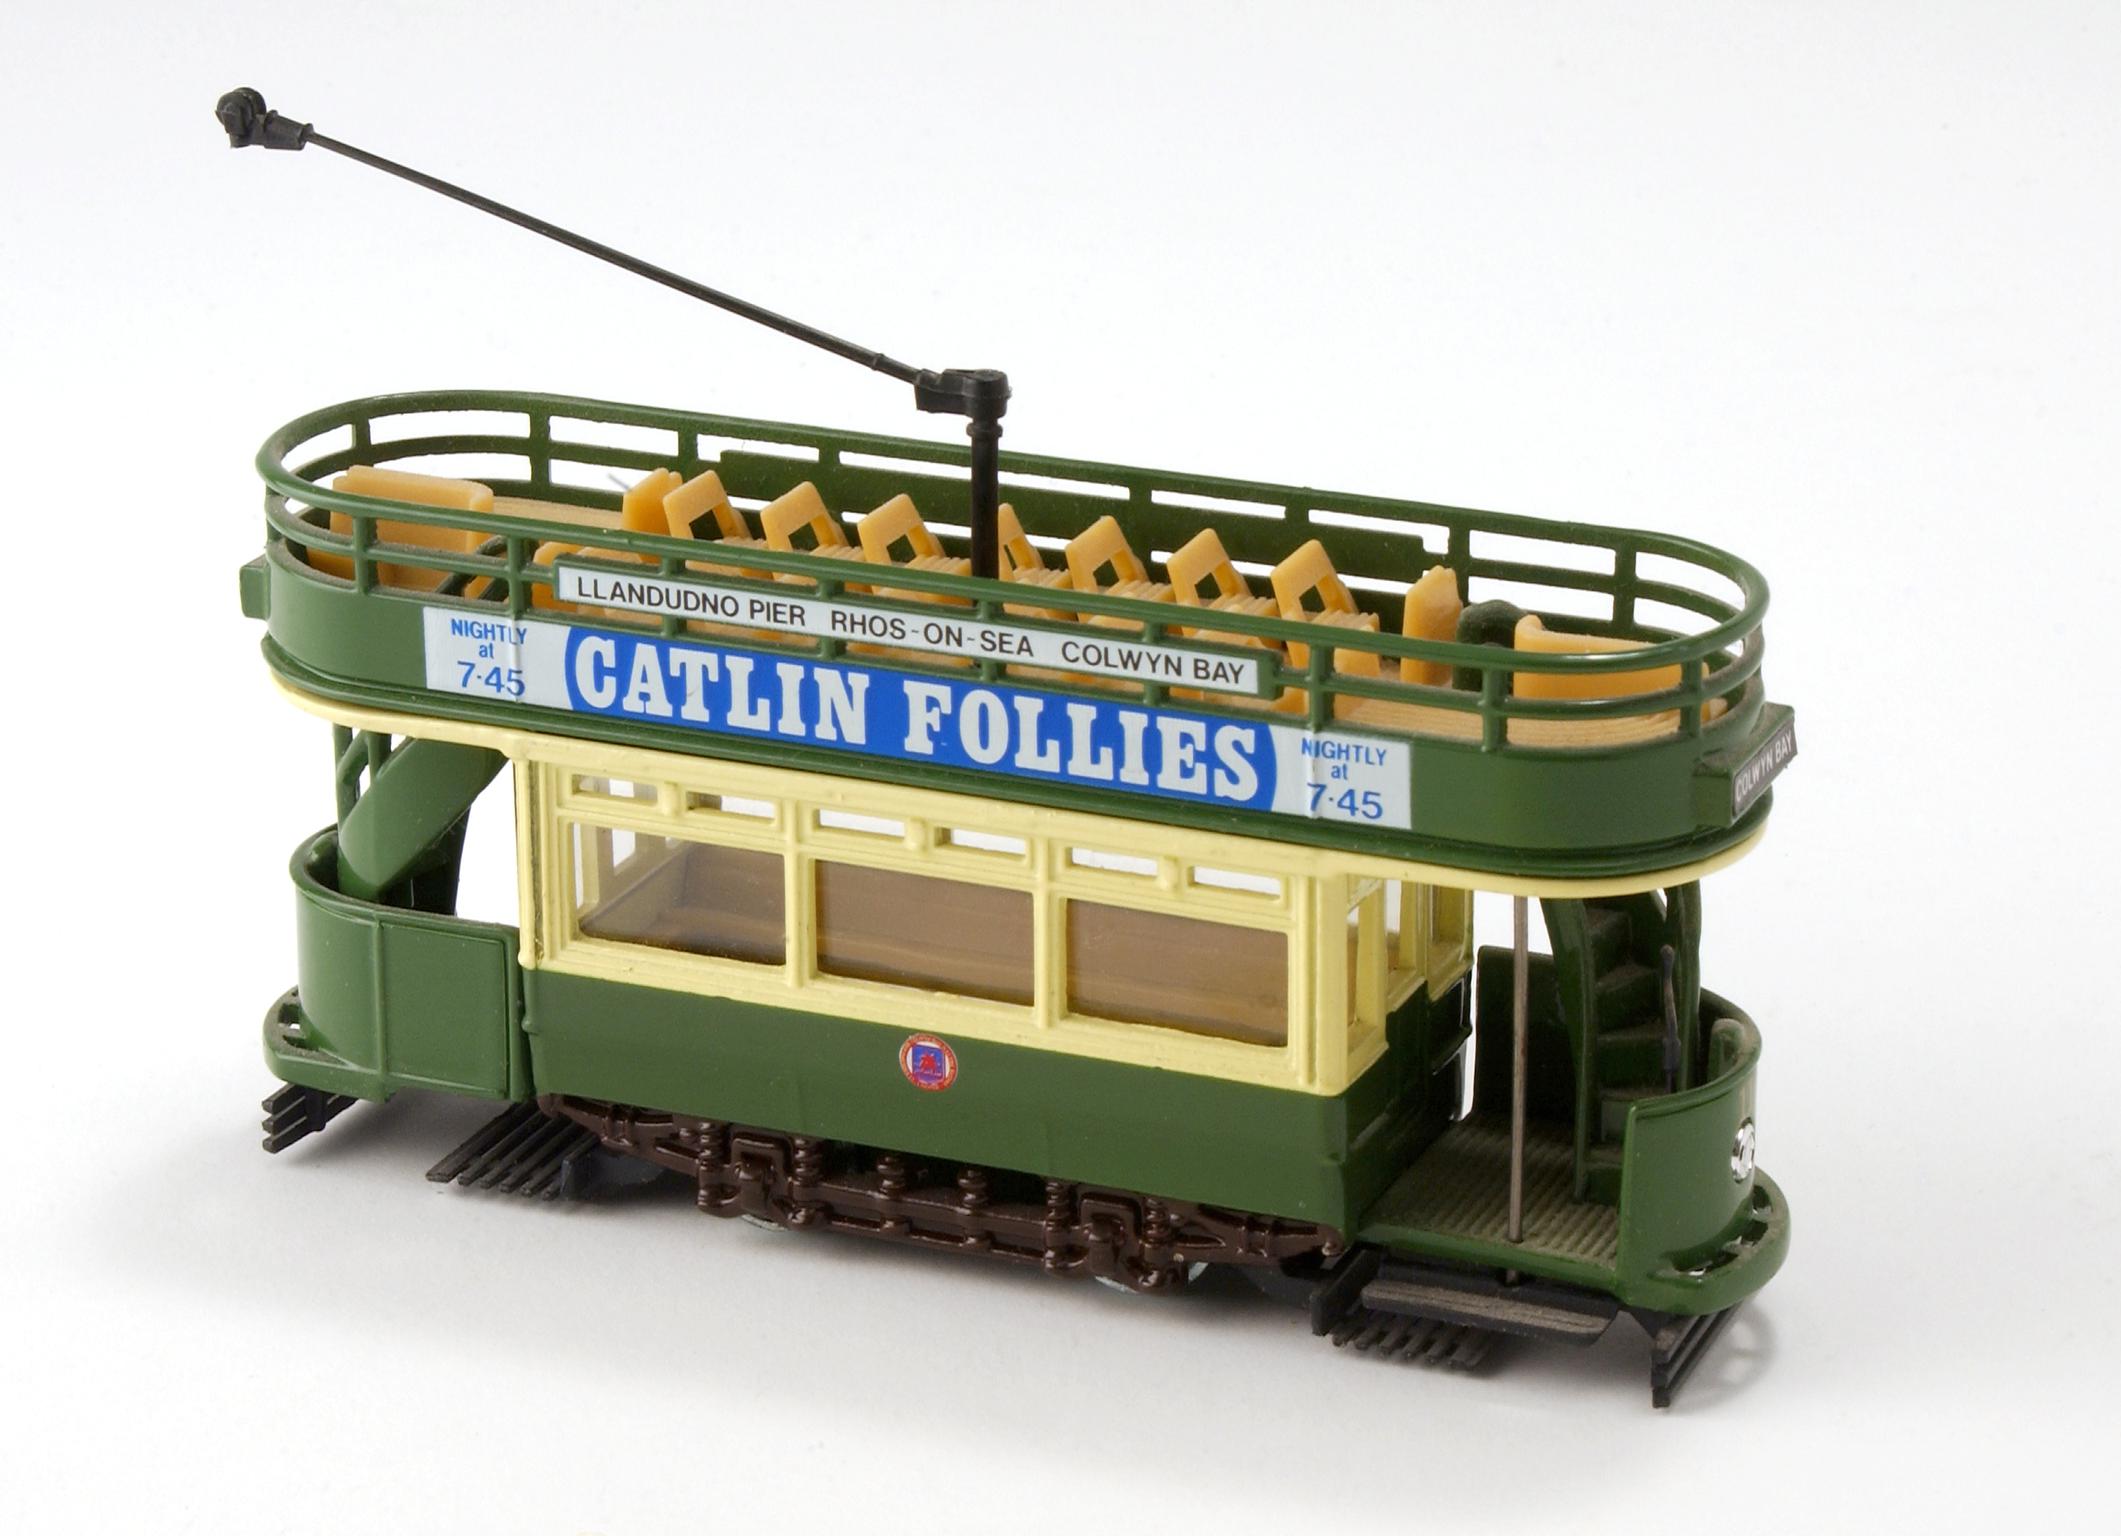 Llandudno & Colwyn Bay electric tram model